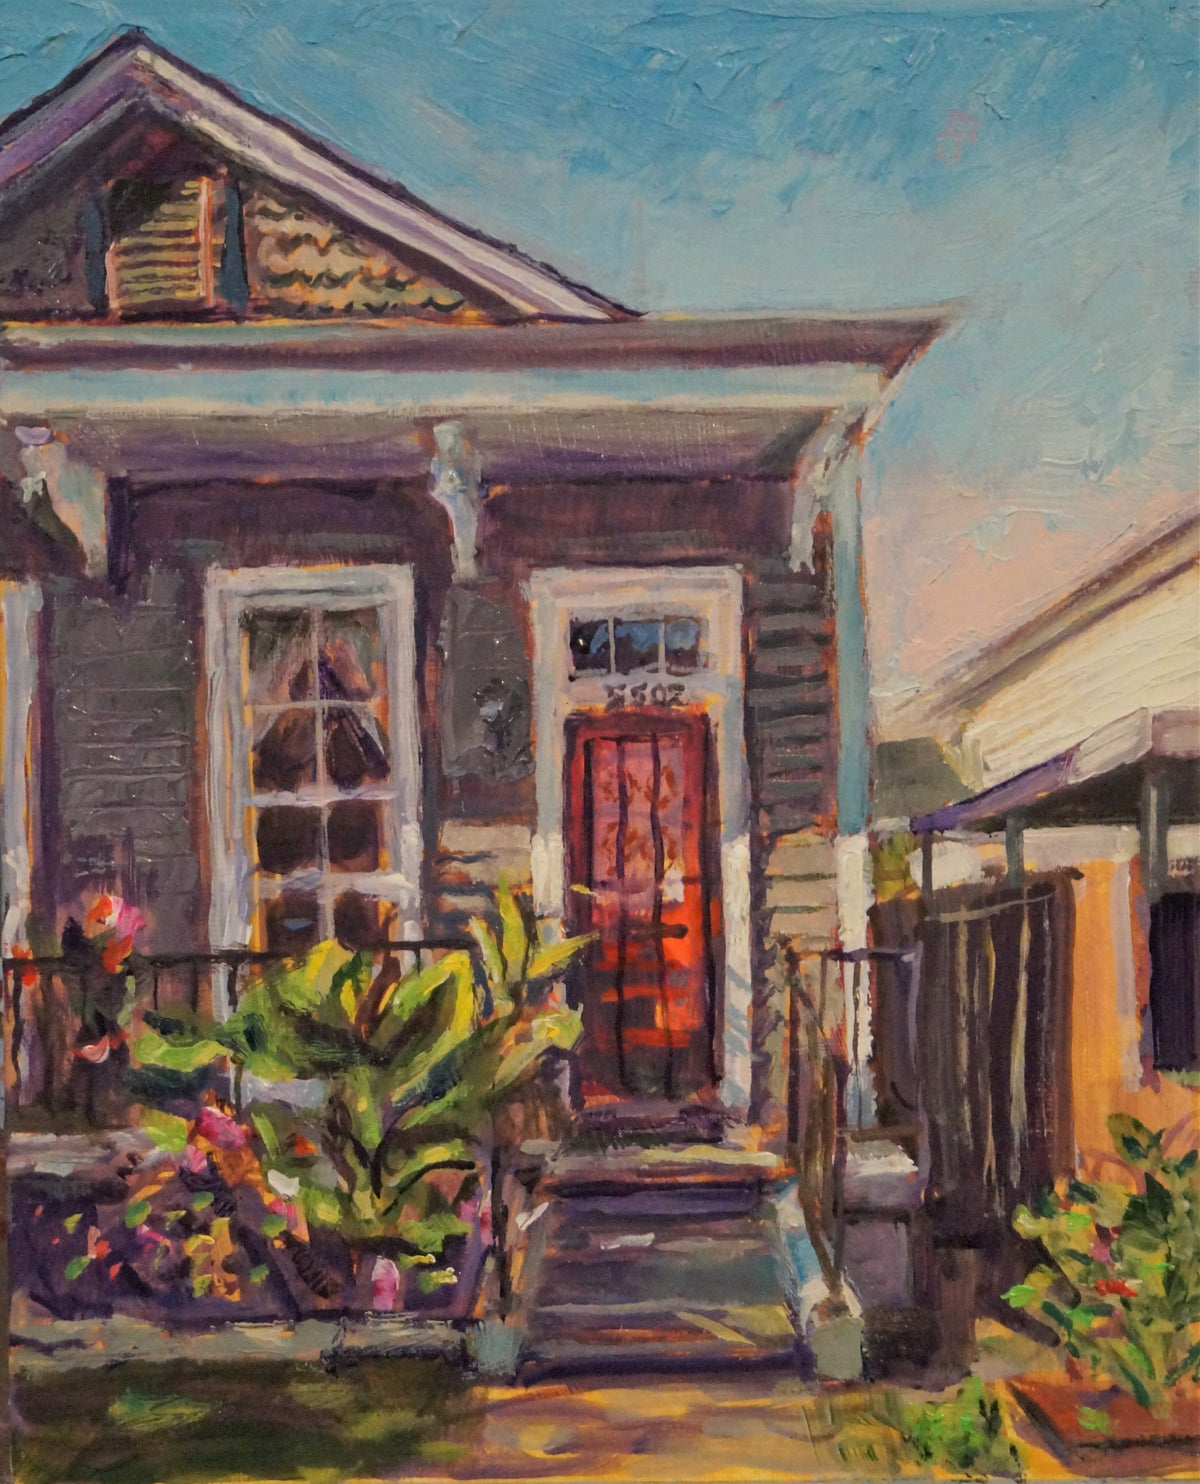 Venetian Cottage, New Orleans, oil on canvas, 10&quot; x 8&quot; - PaulFayard